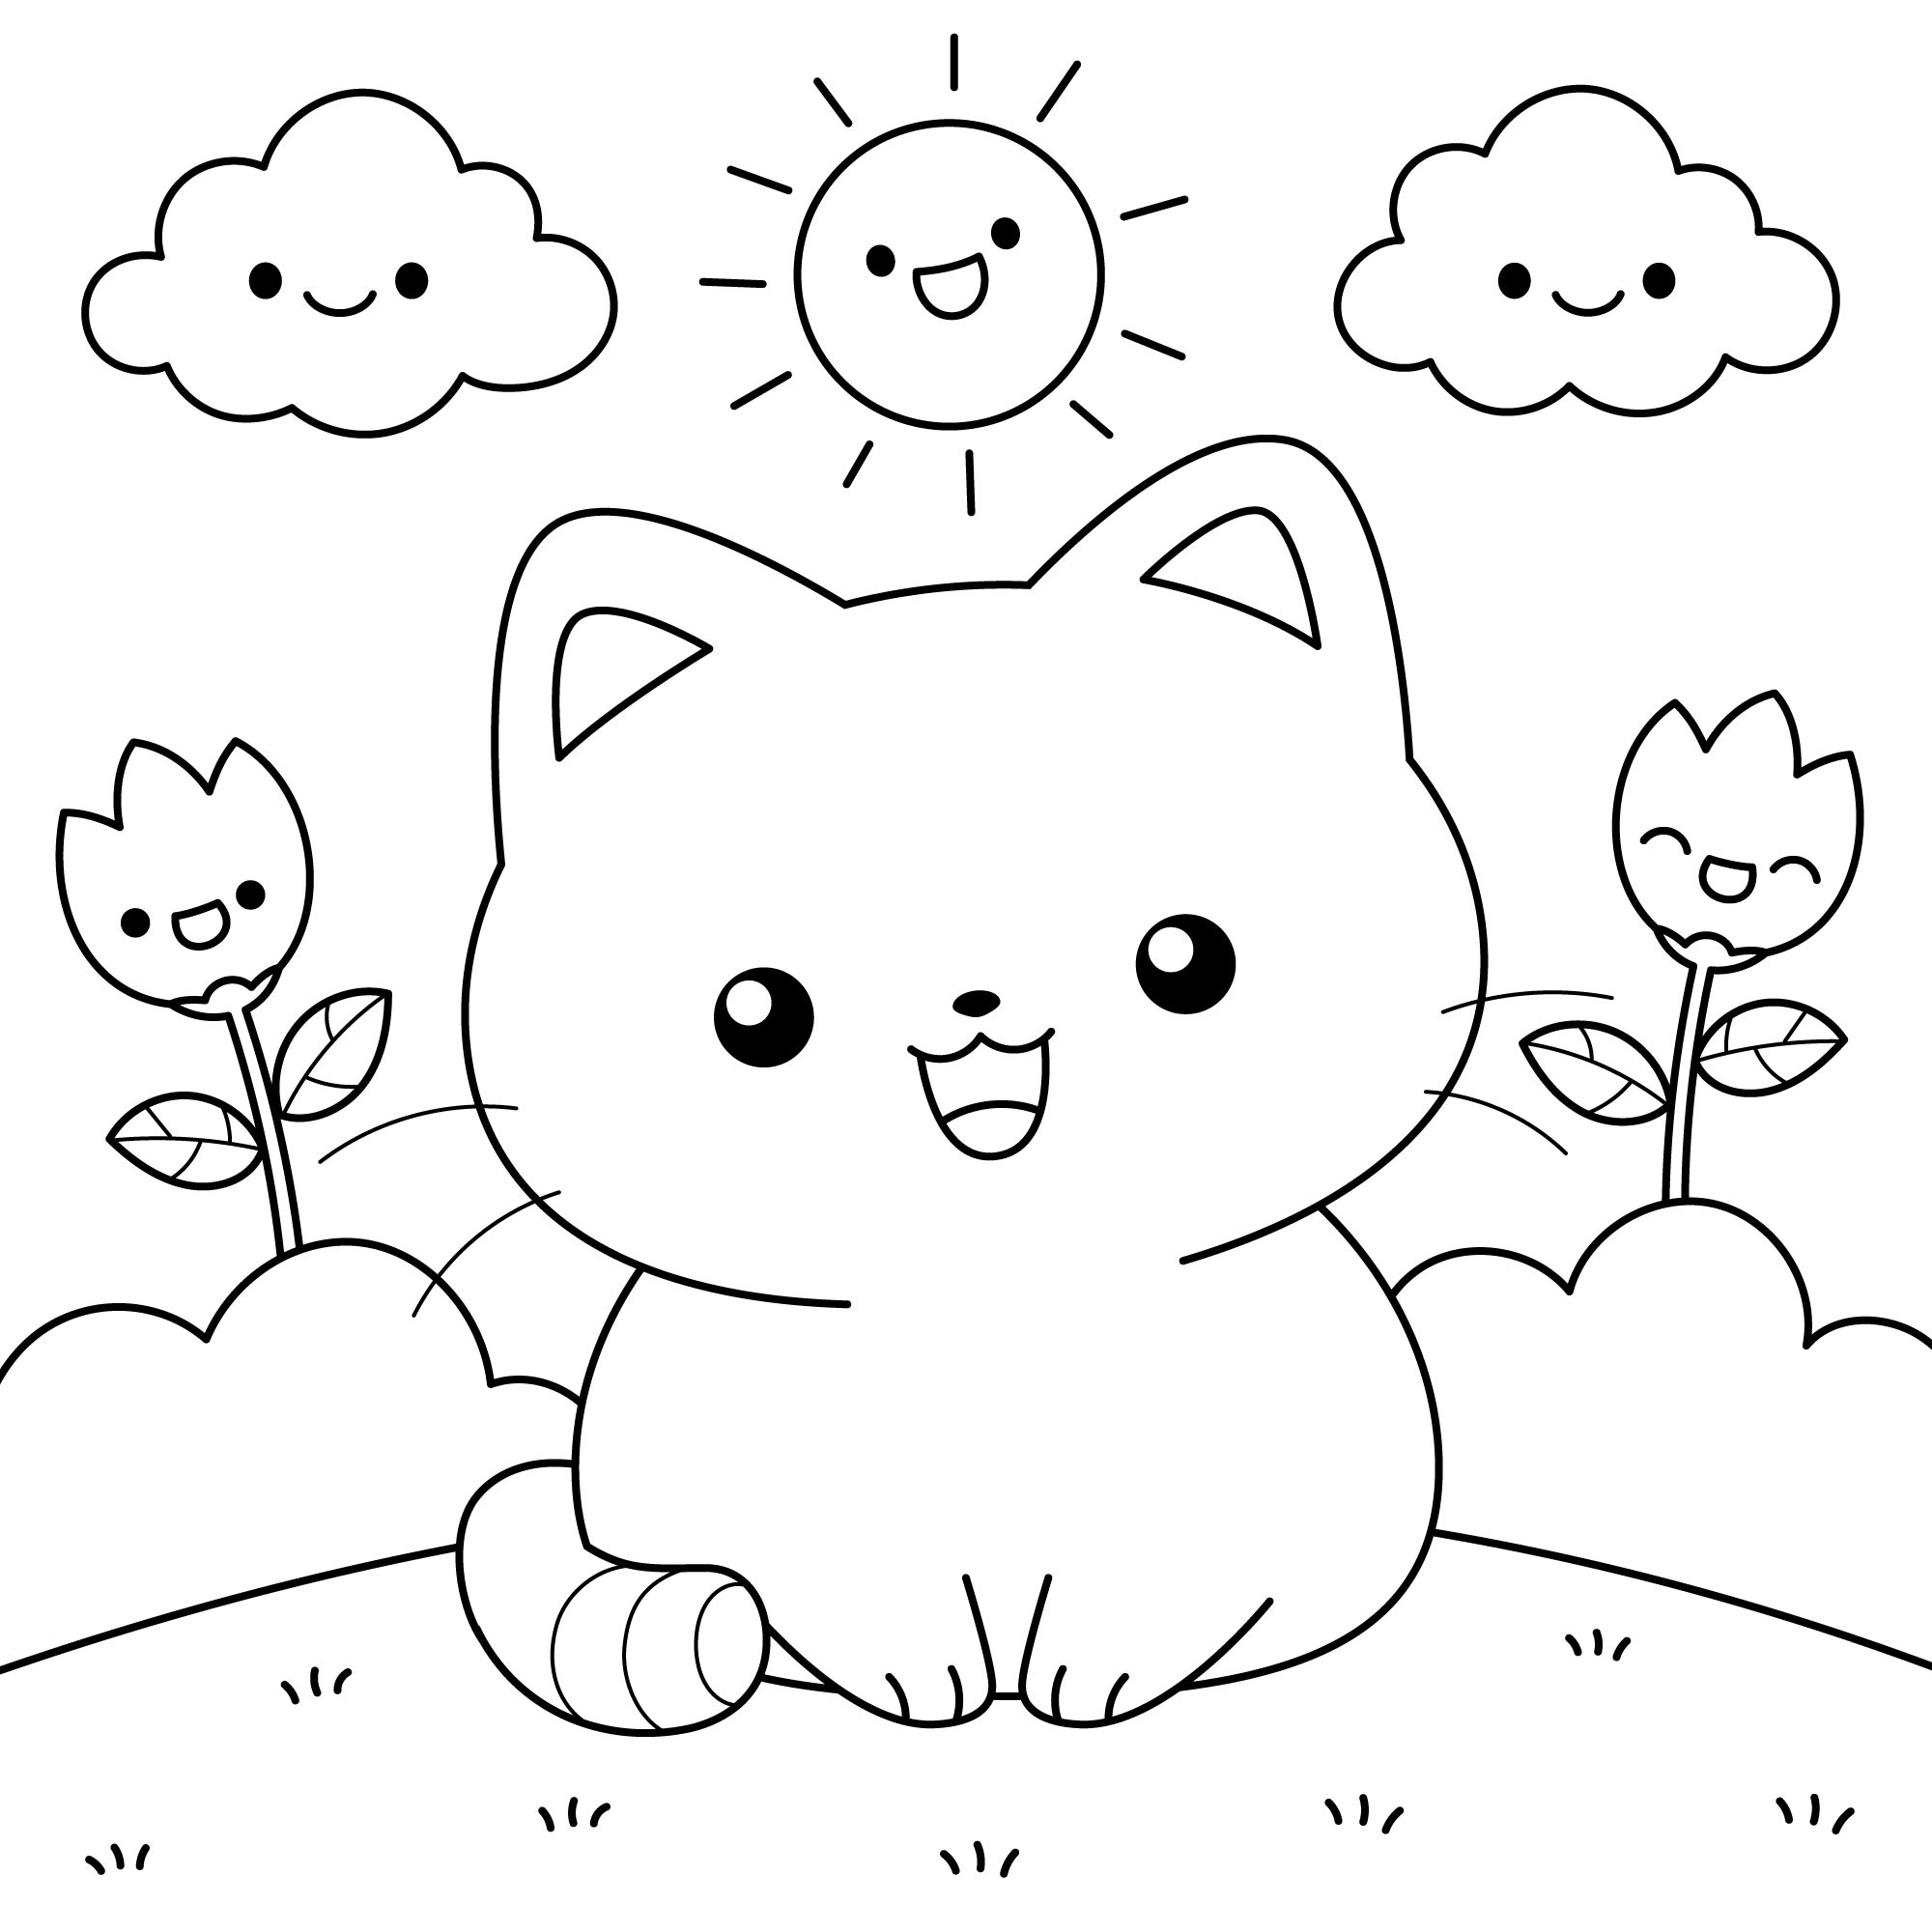 Раскраска для детей: аниме кошечка в поле на фоне цветов и неба